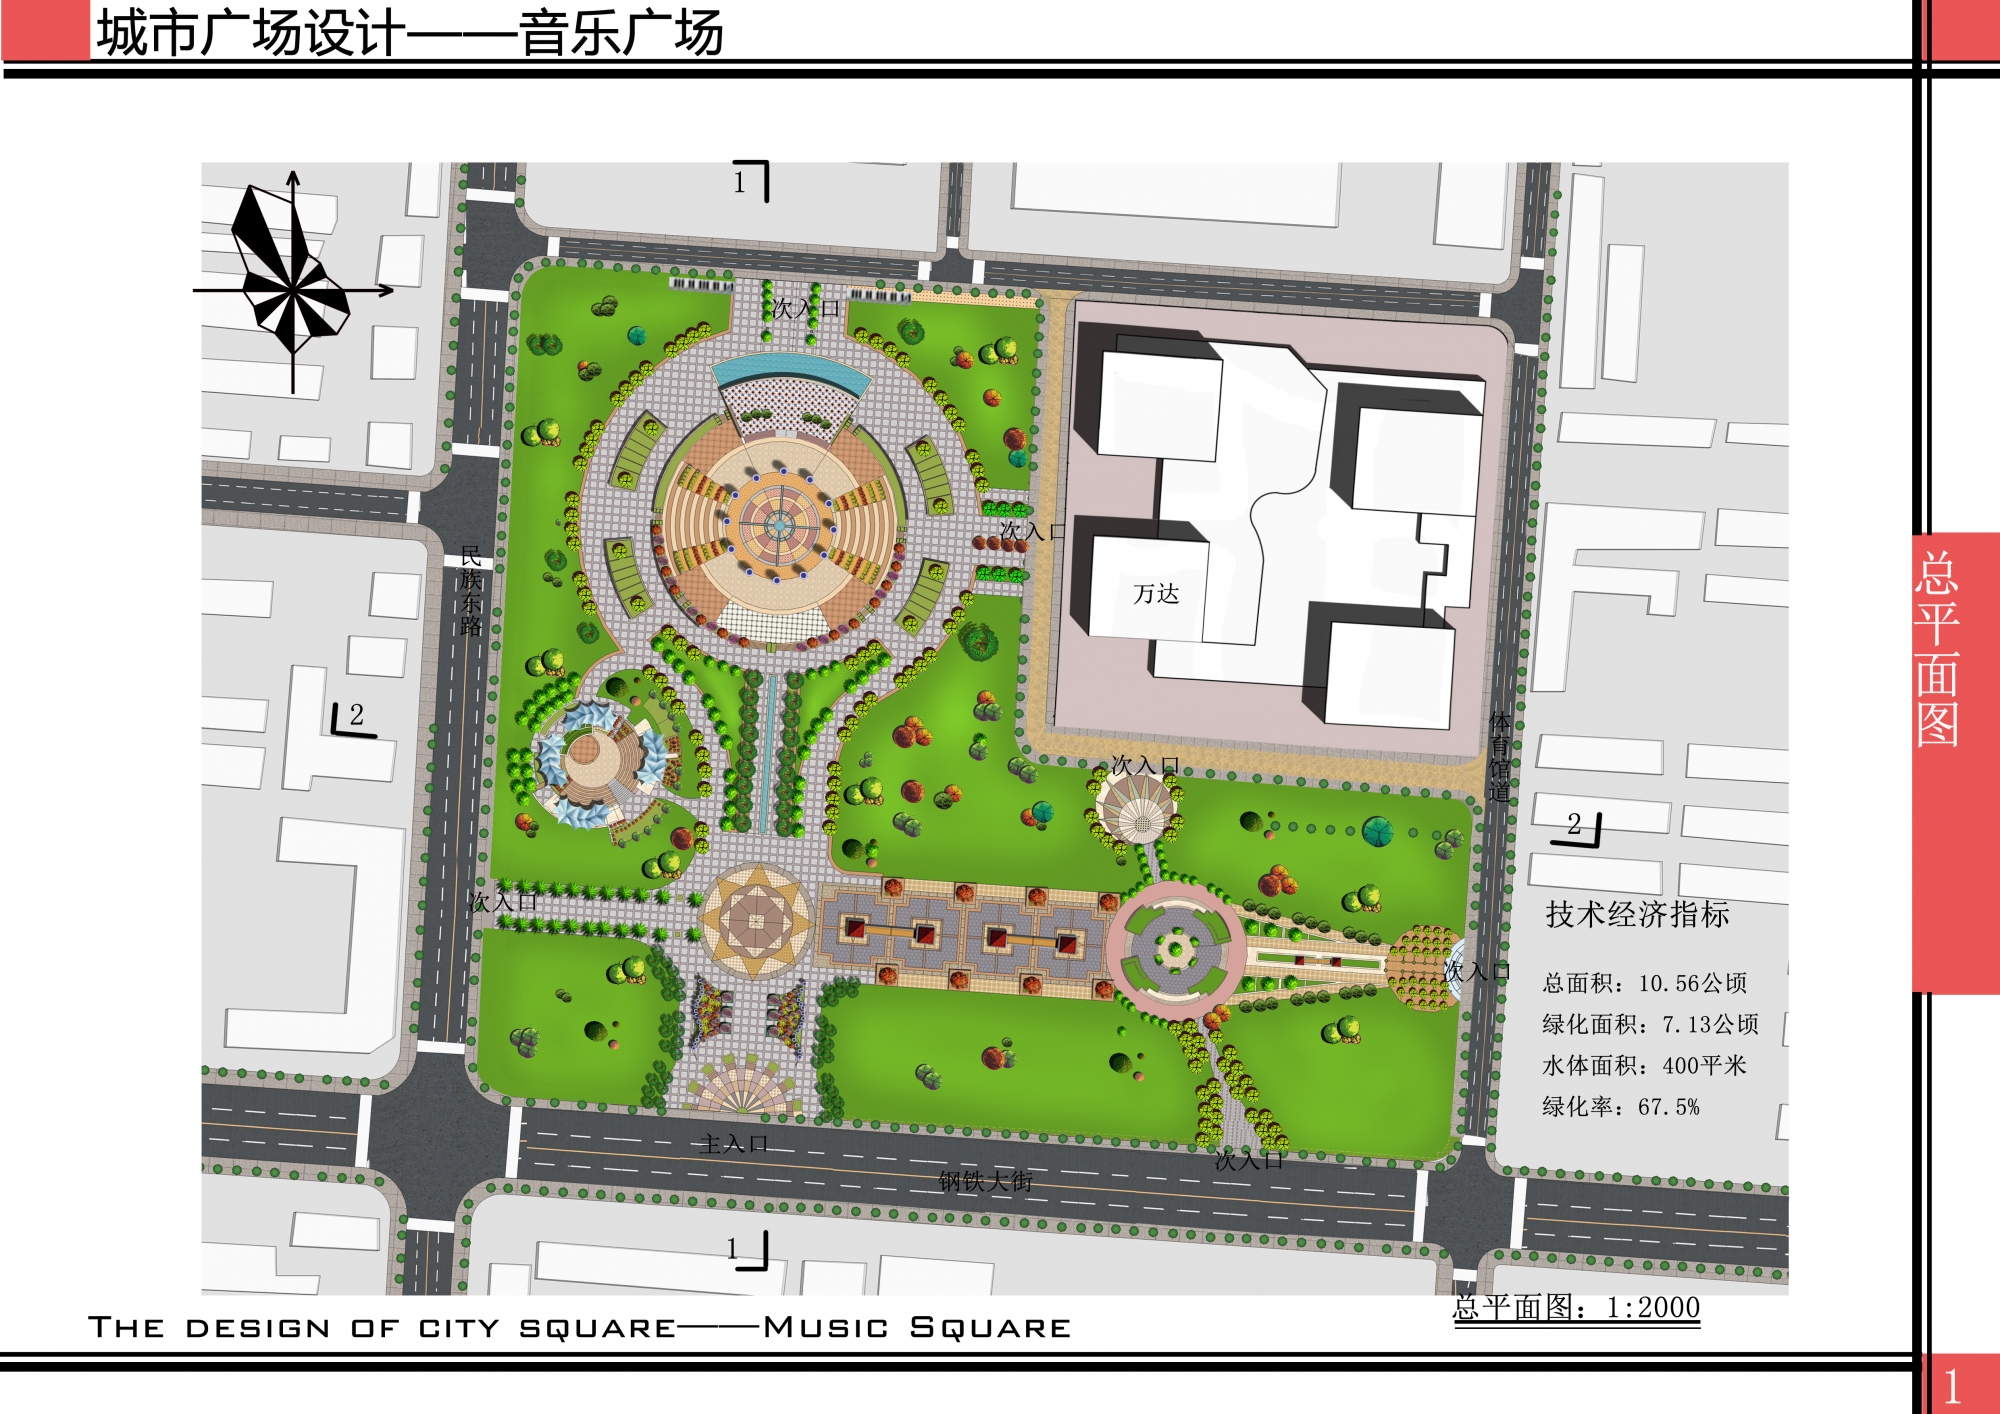 广场 图片类型: 设计方案 所在地区: 北方10公顷广场设计,包含平面图